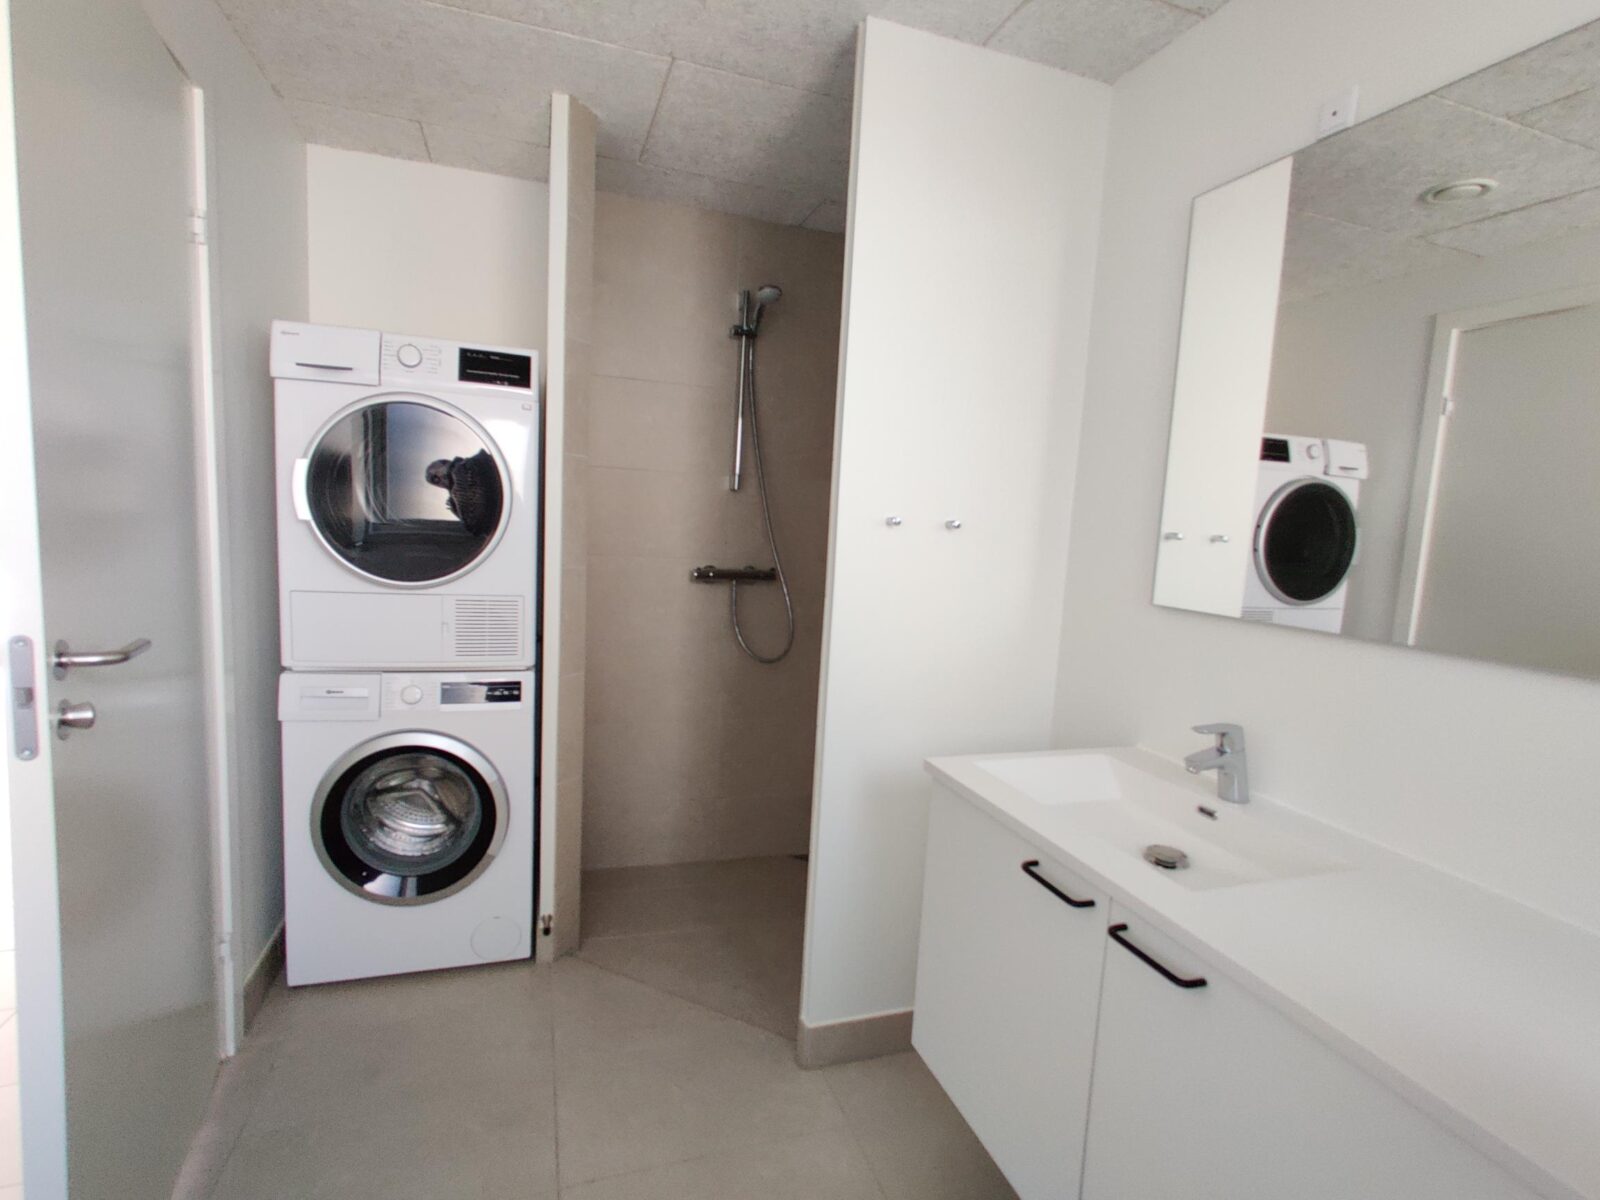 Bad og vaskesøjle | Lejebolig 3 værelser